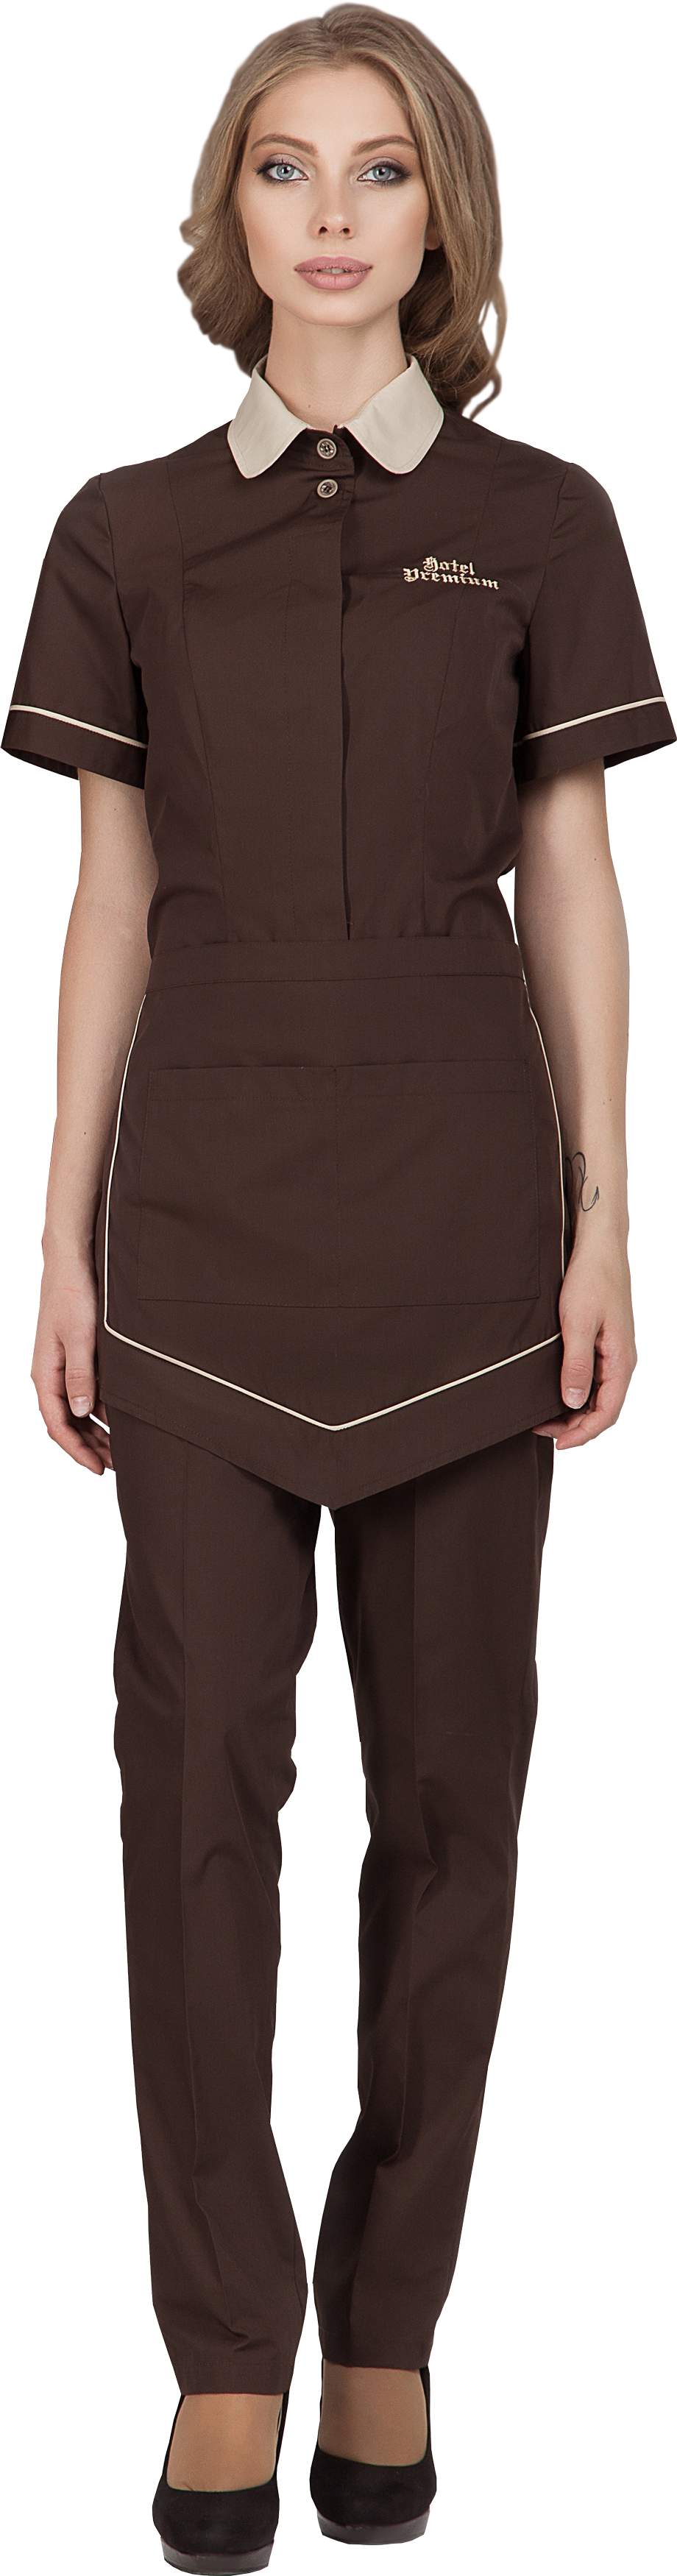 Комплект для горничной LIMA - блузка / фартук / брюки 0